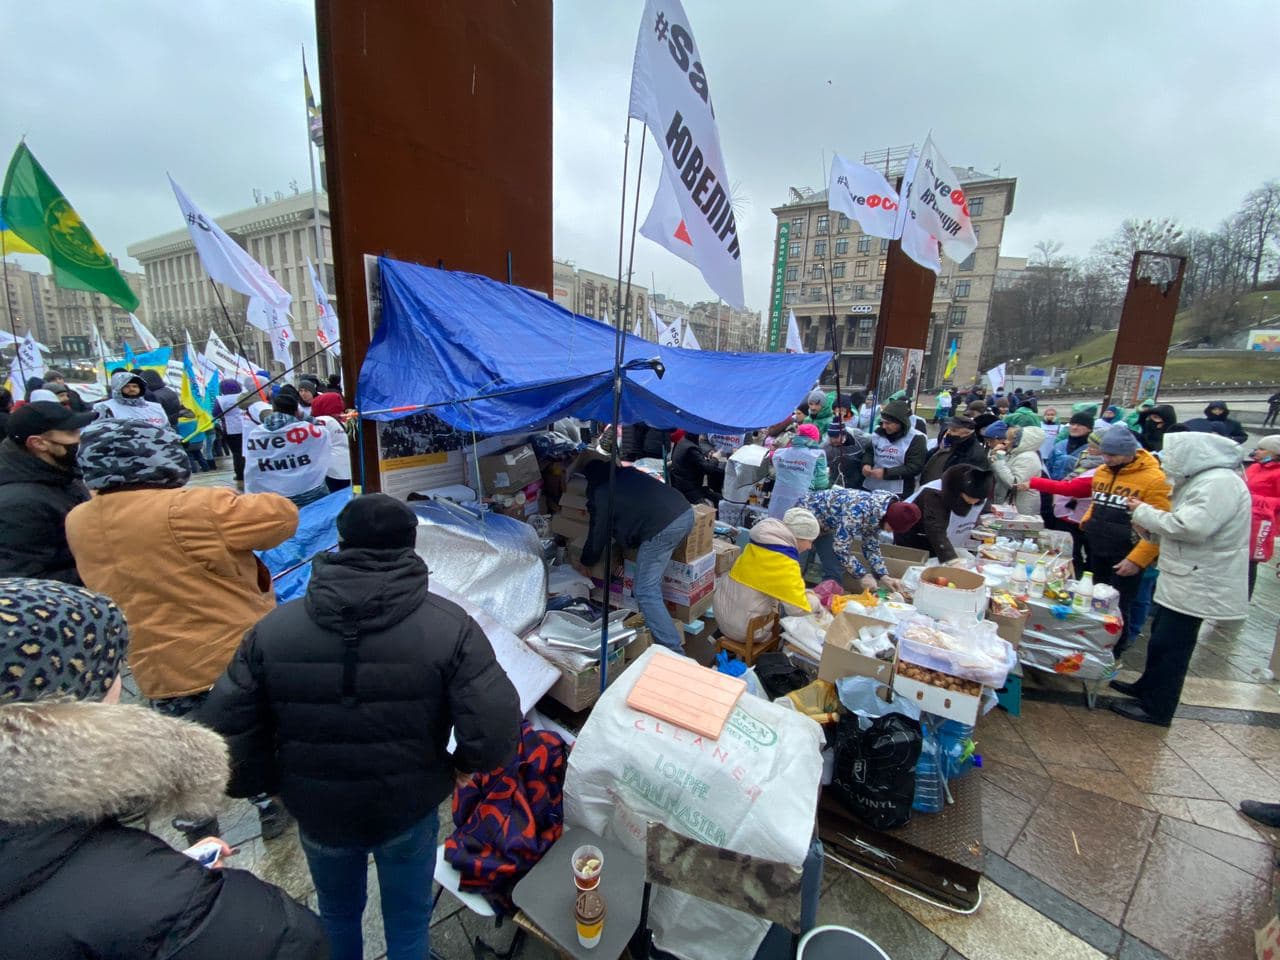 Палатки протестующие не устанавливали, но заметно растёт количество продовольственных запасов